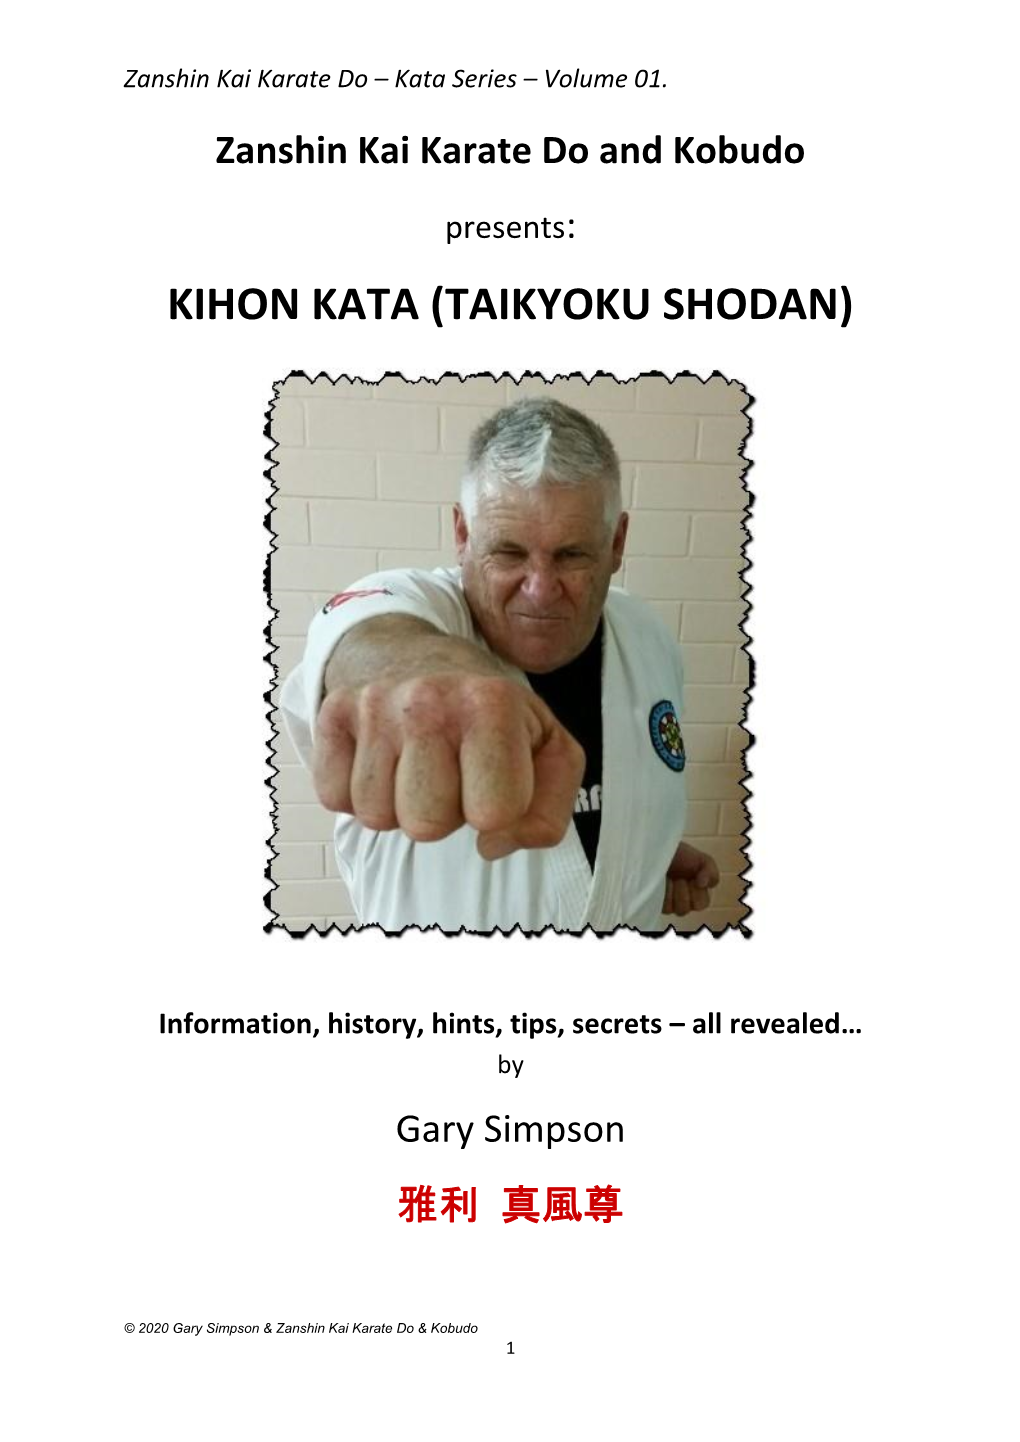 Kihon Kata (Taikyoku Shodan)